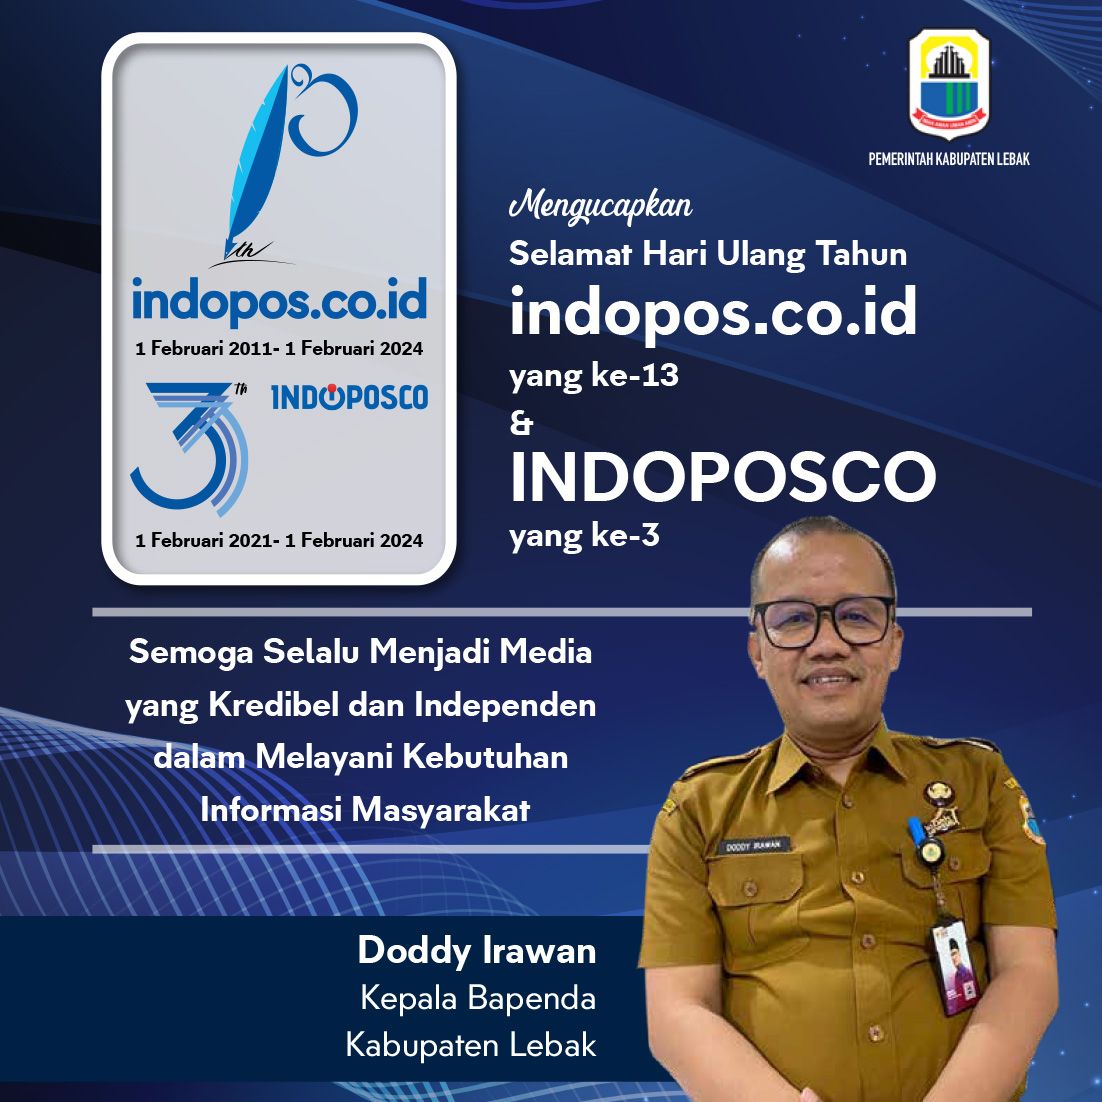 indopos - hut 002 - www.indopos.co.id